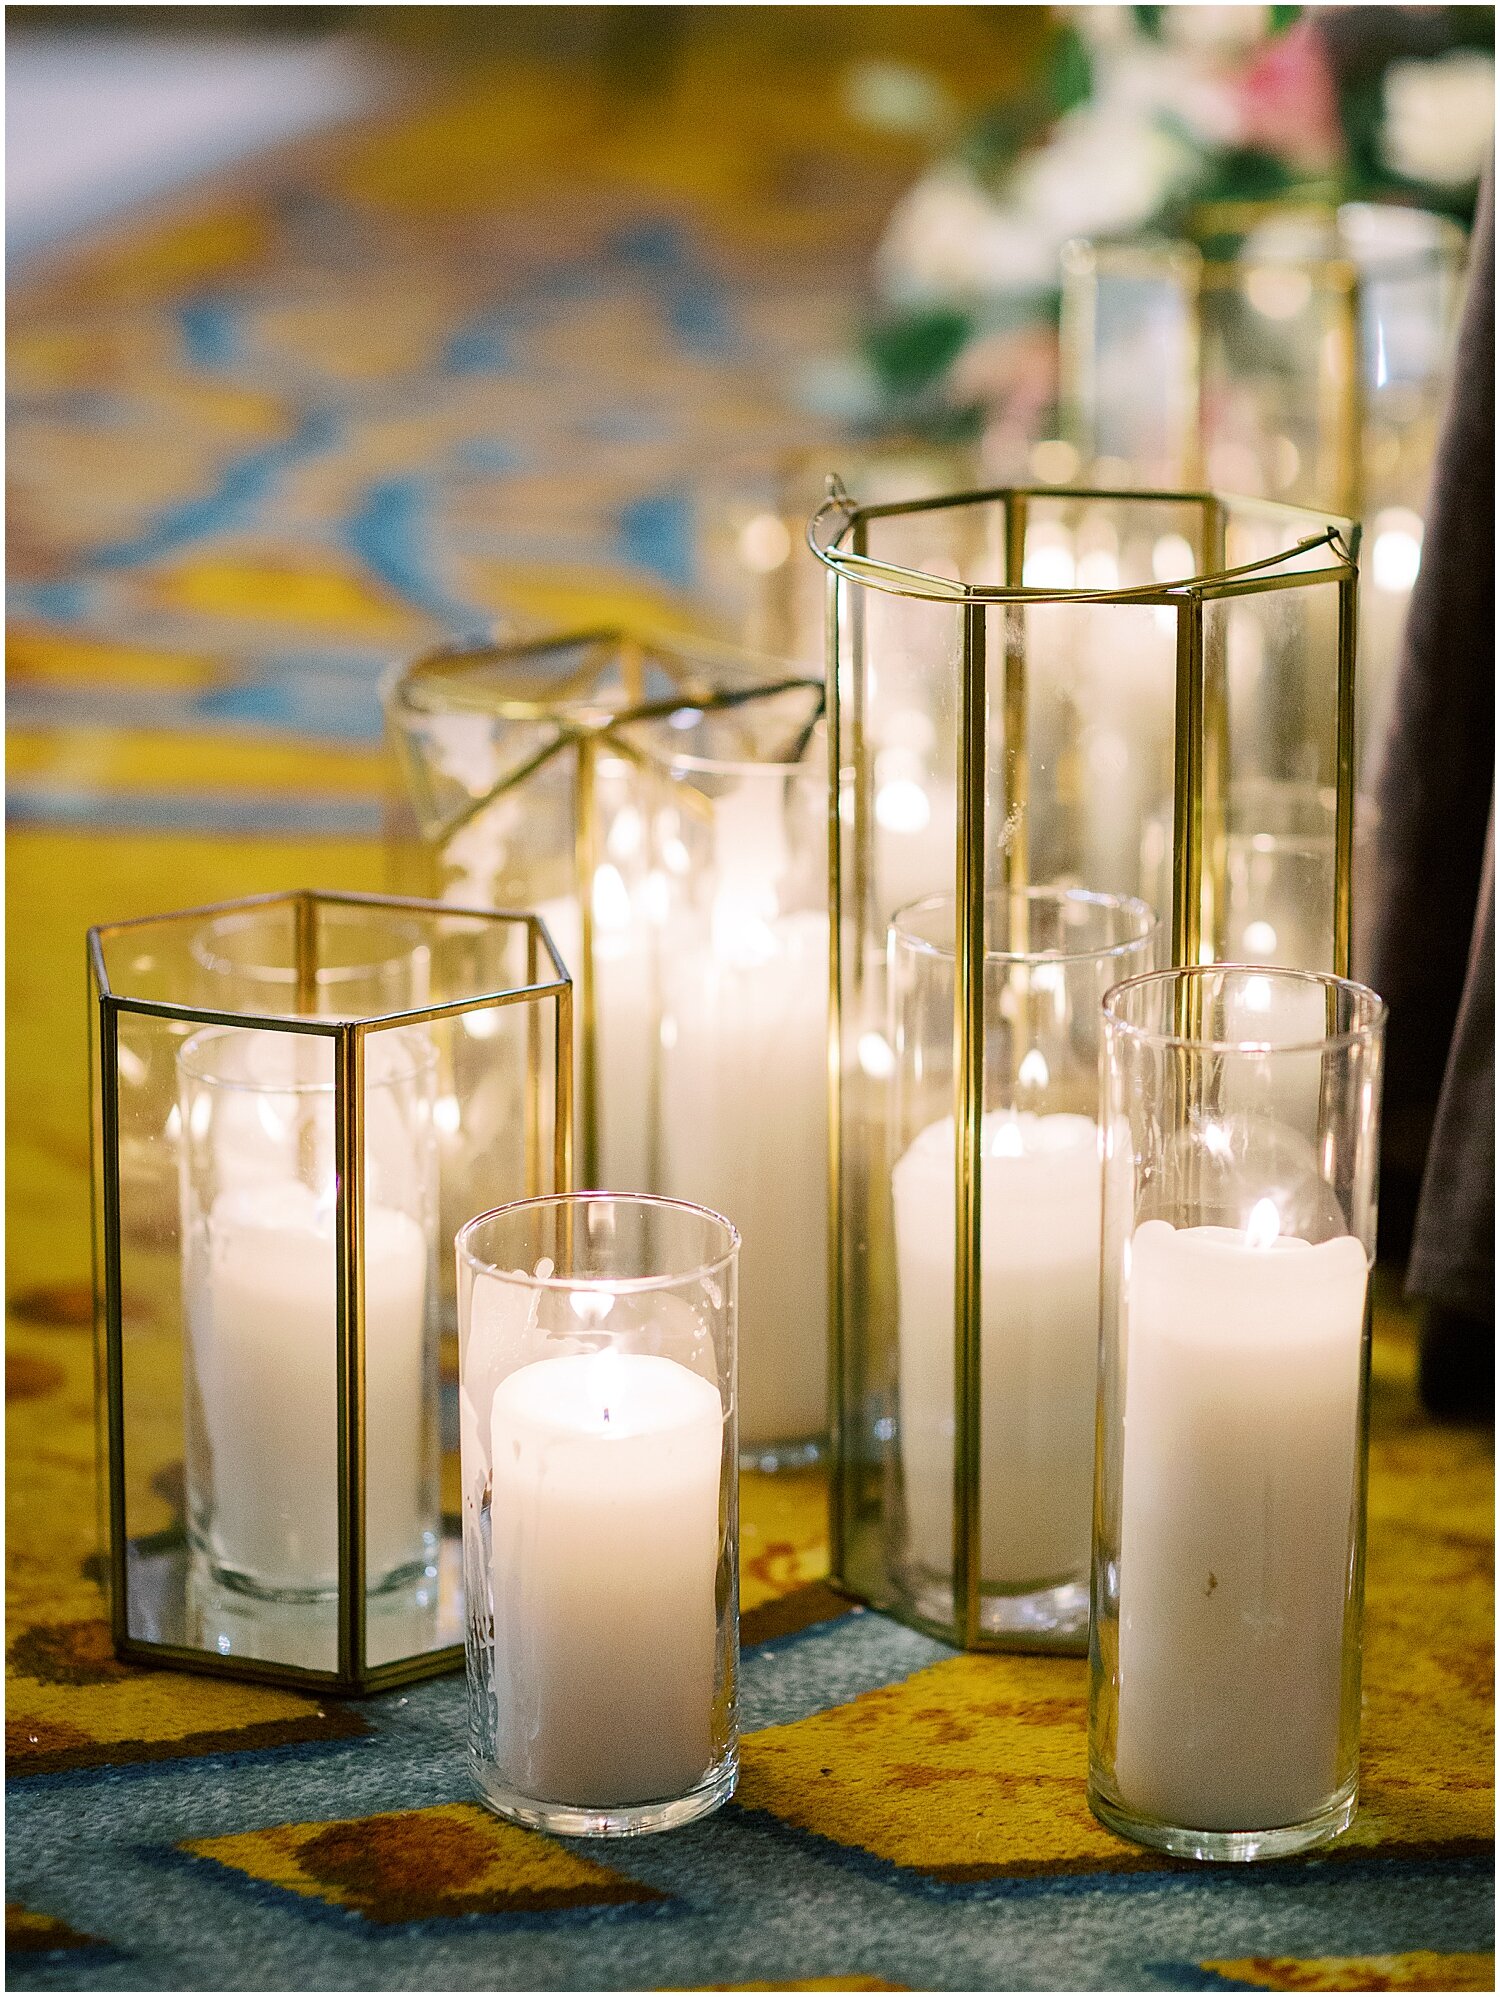  candlelight wedding decor 